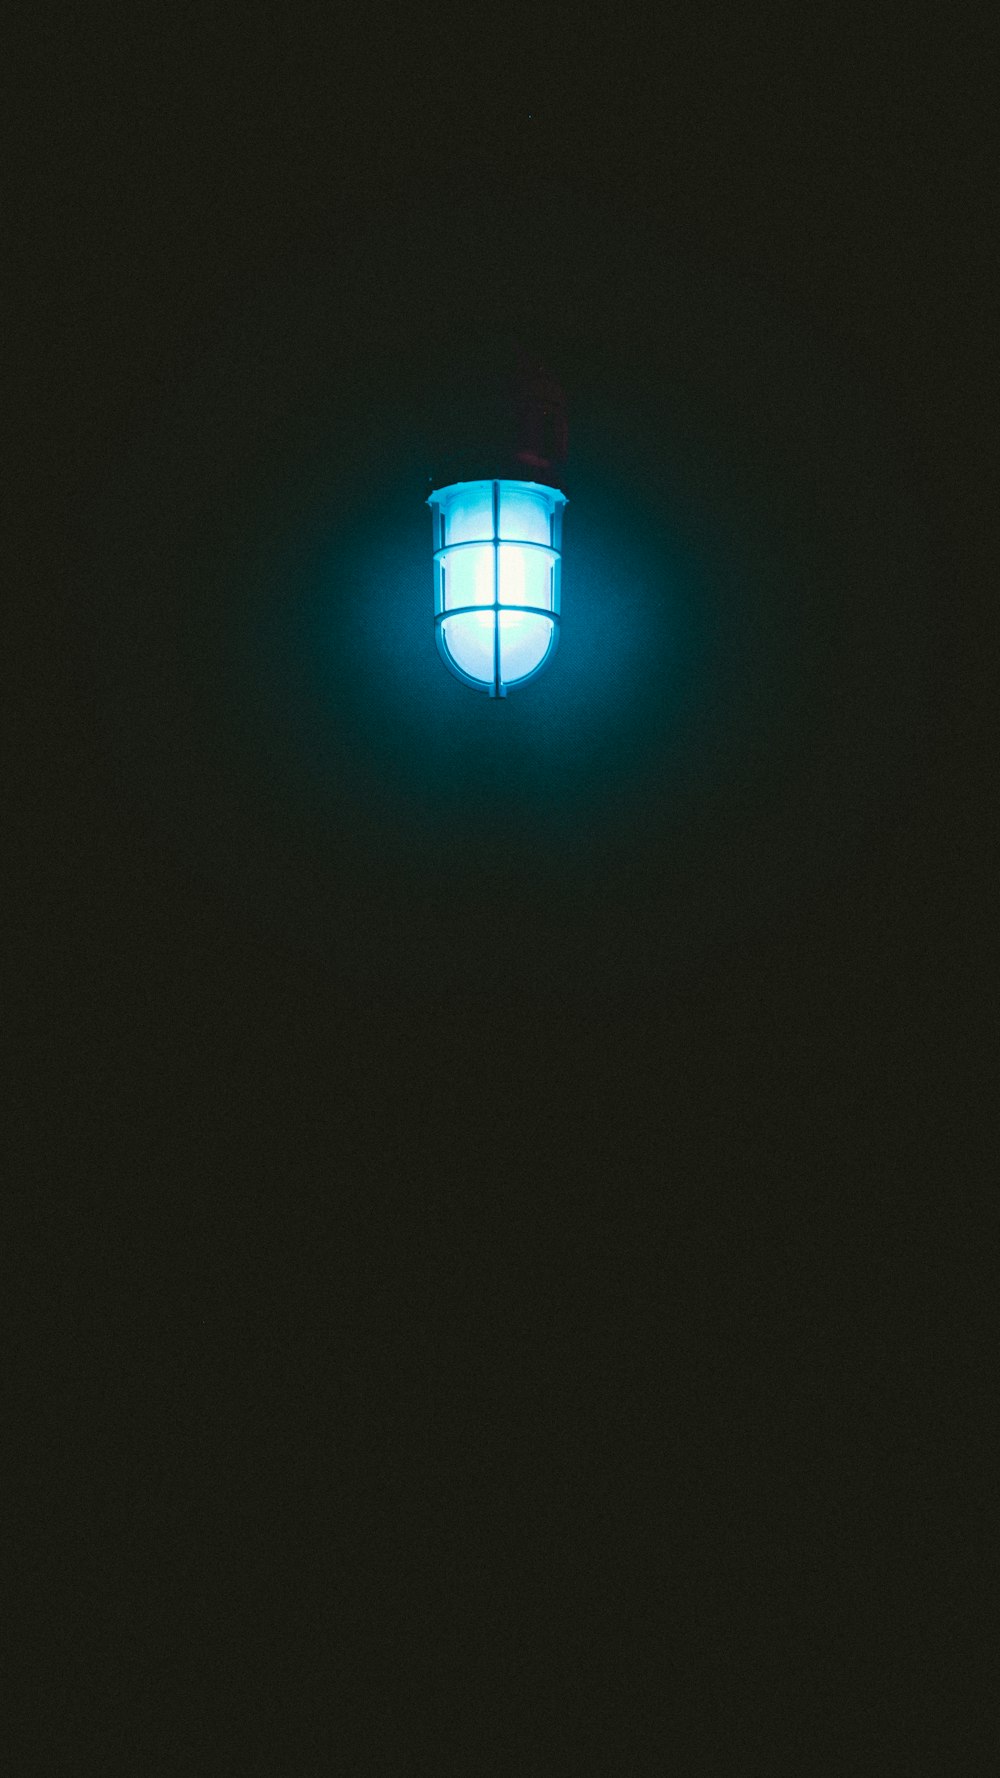 Lampe suspendue bleue éclairée